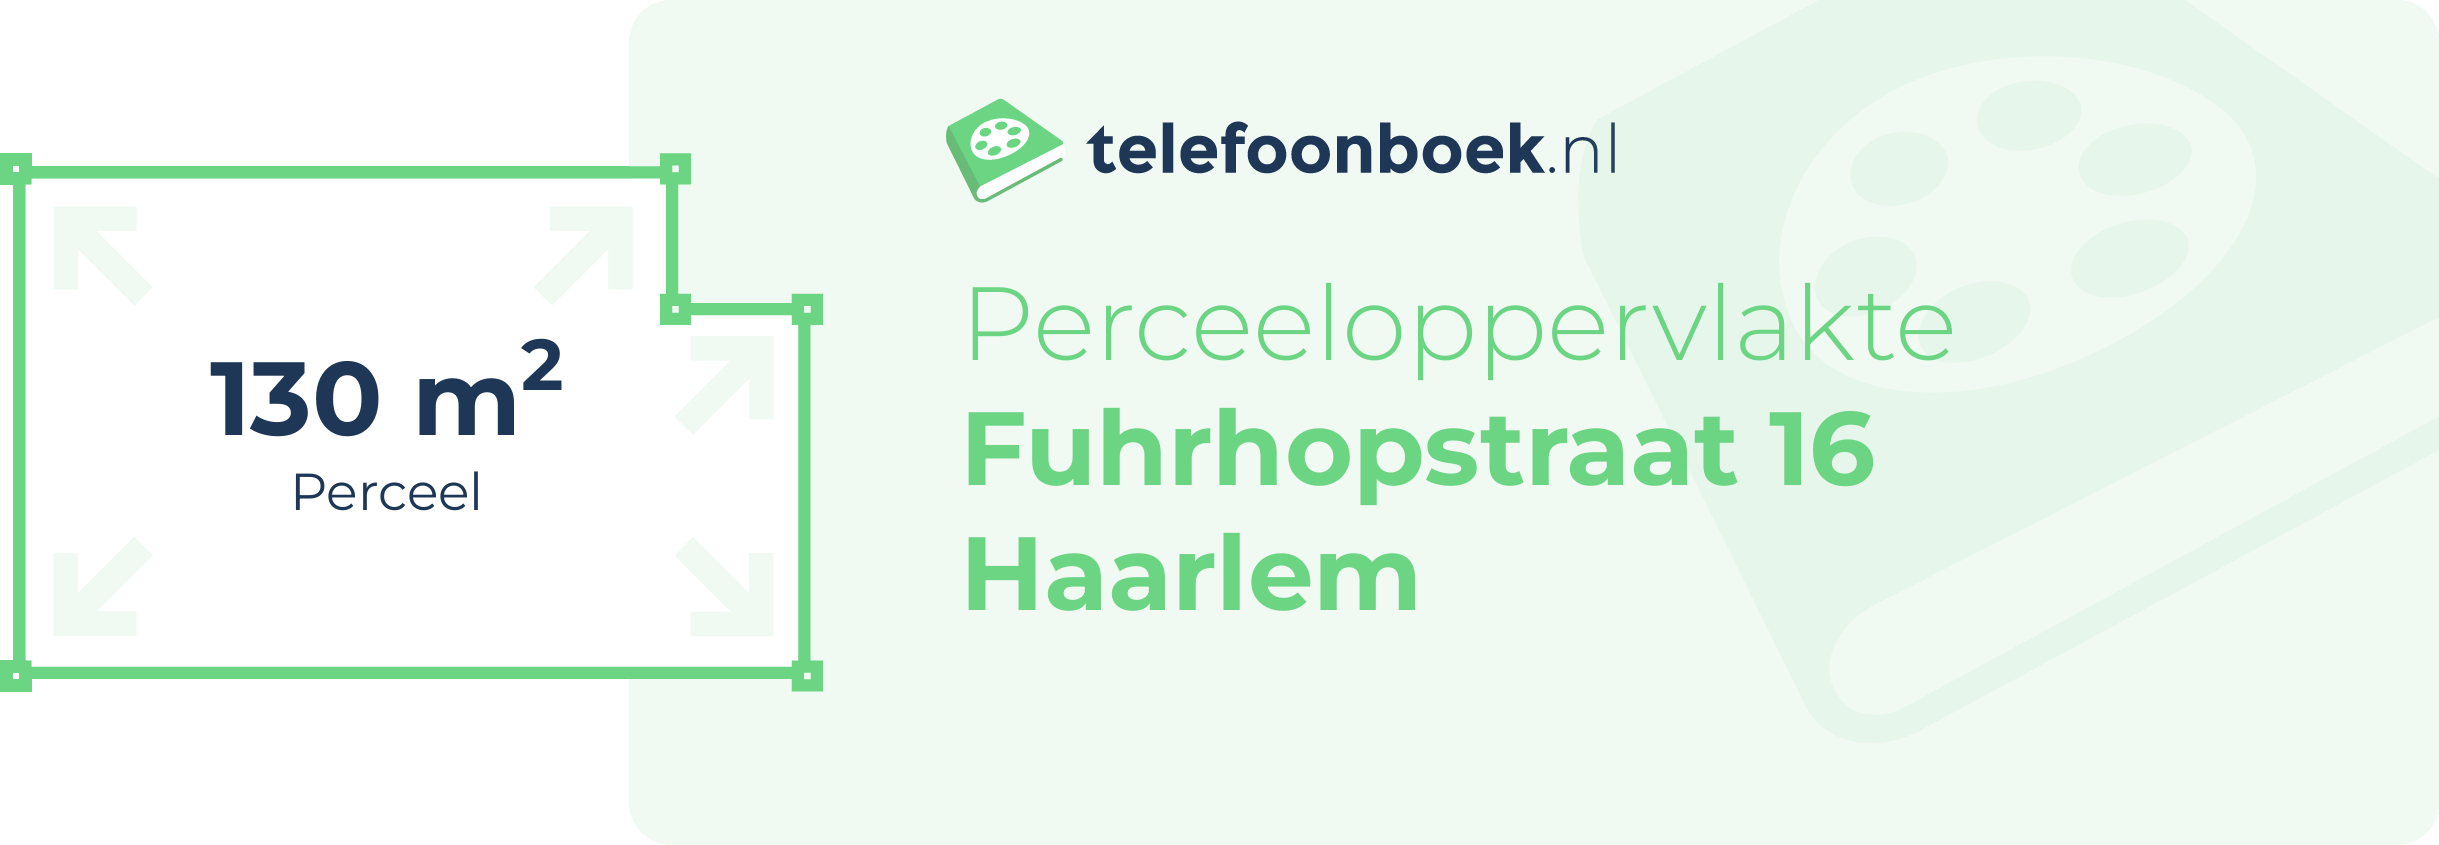 Perceeloppervlakte Fuhrhopstraat 16 Haarlem